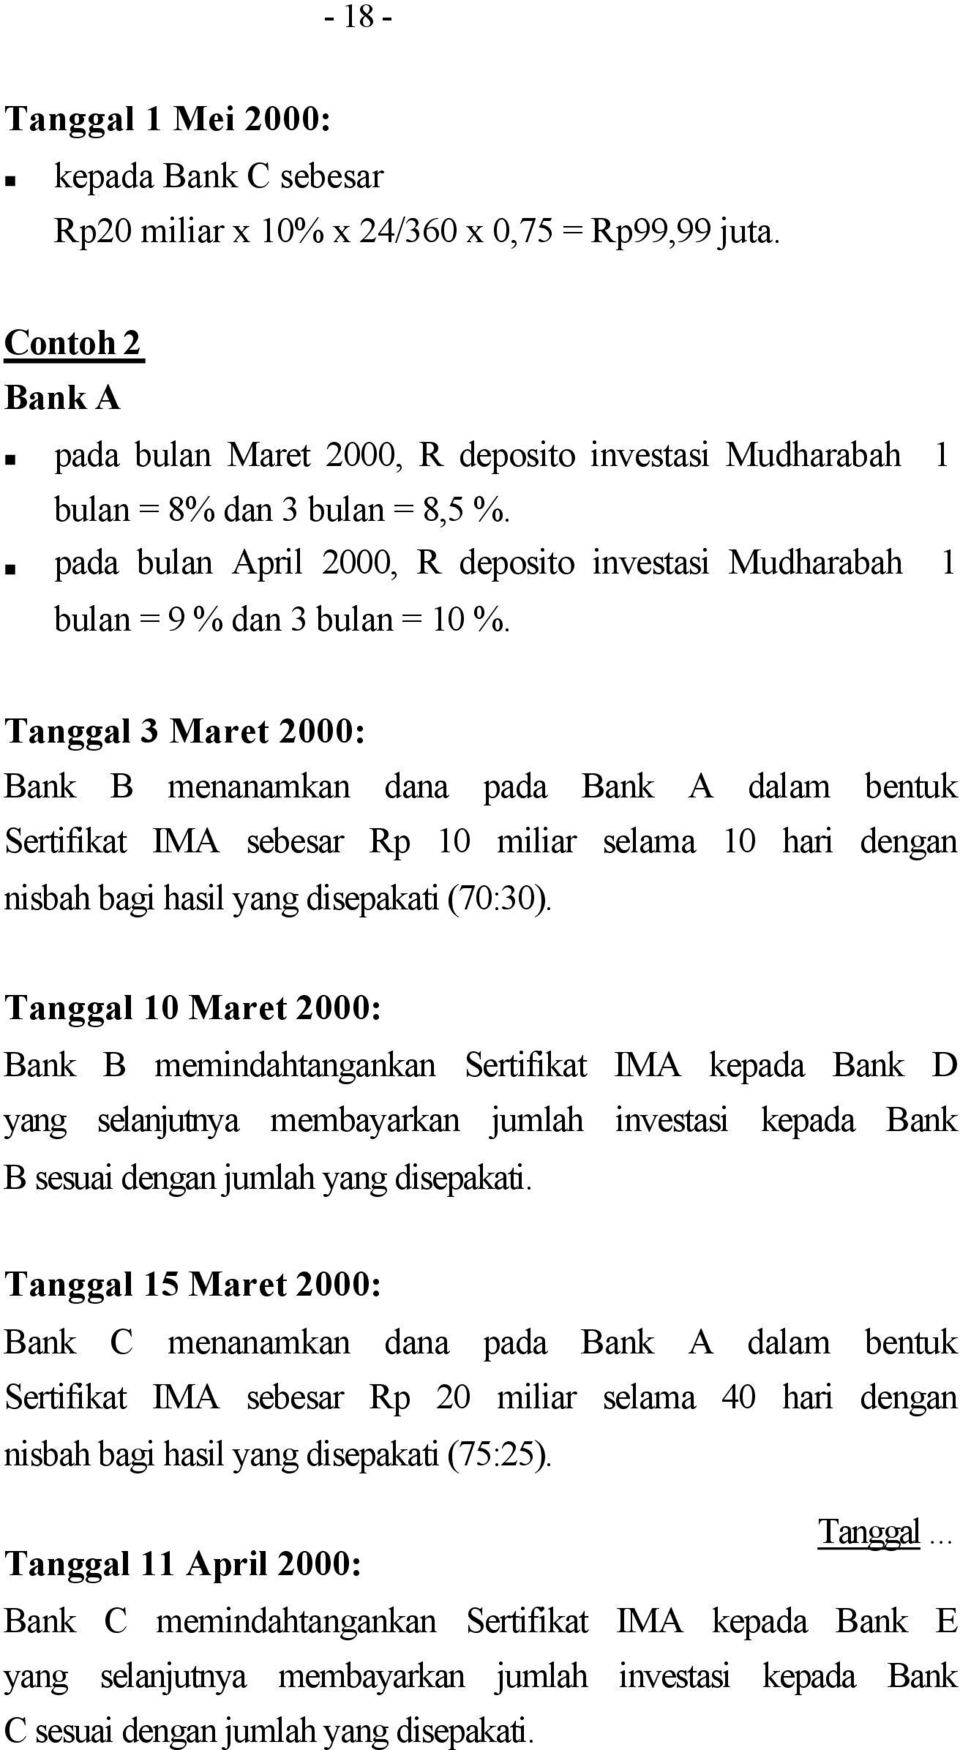 Tanggal 3 Maret 2000: Bank B menanamkan dana pada Bank A dalam bentuk Sertifikat IMA sebesar Rp 10 miliar selama 10 hari dengan nisbah bagi hasil yang disepakati (70:30).